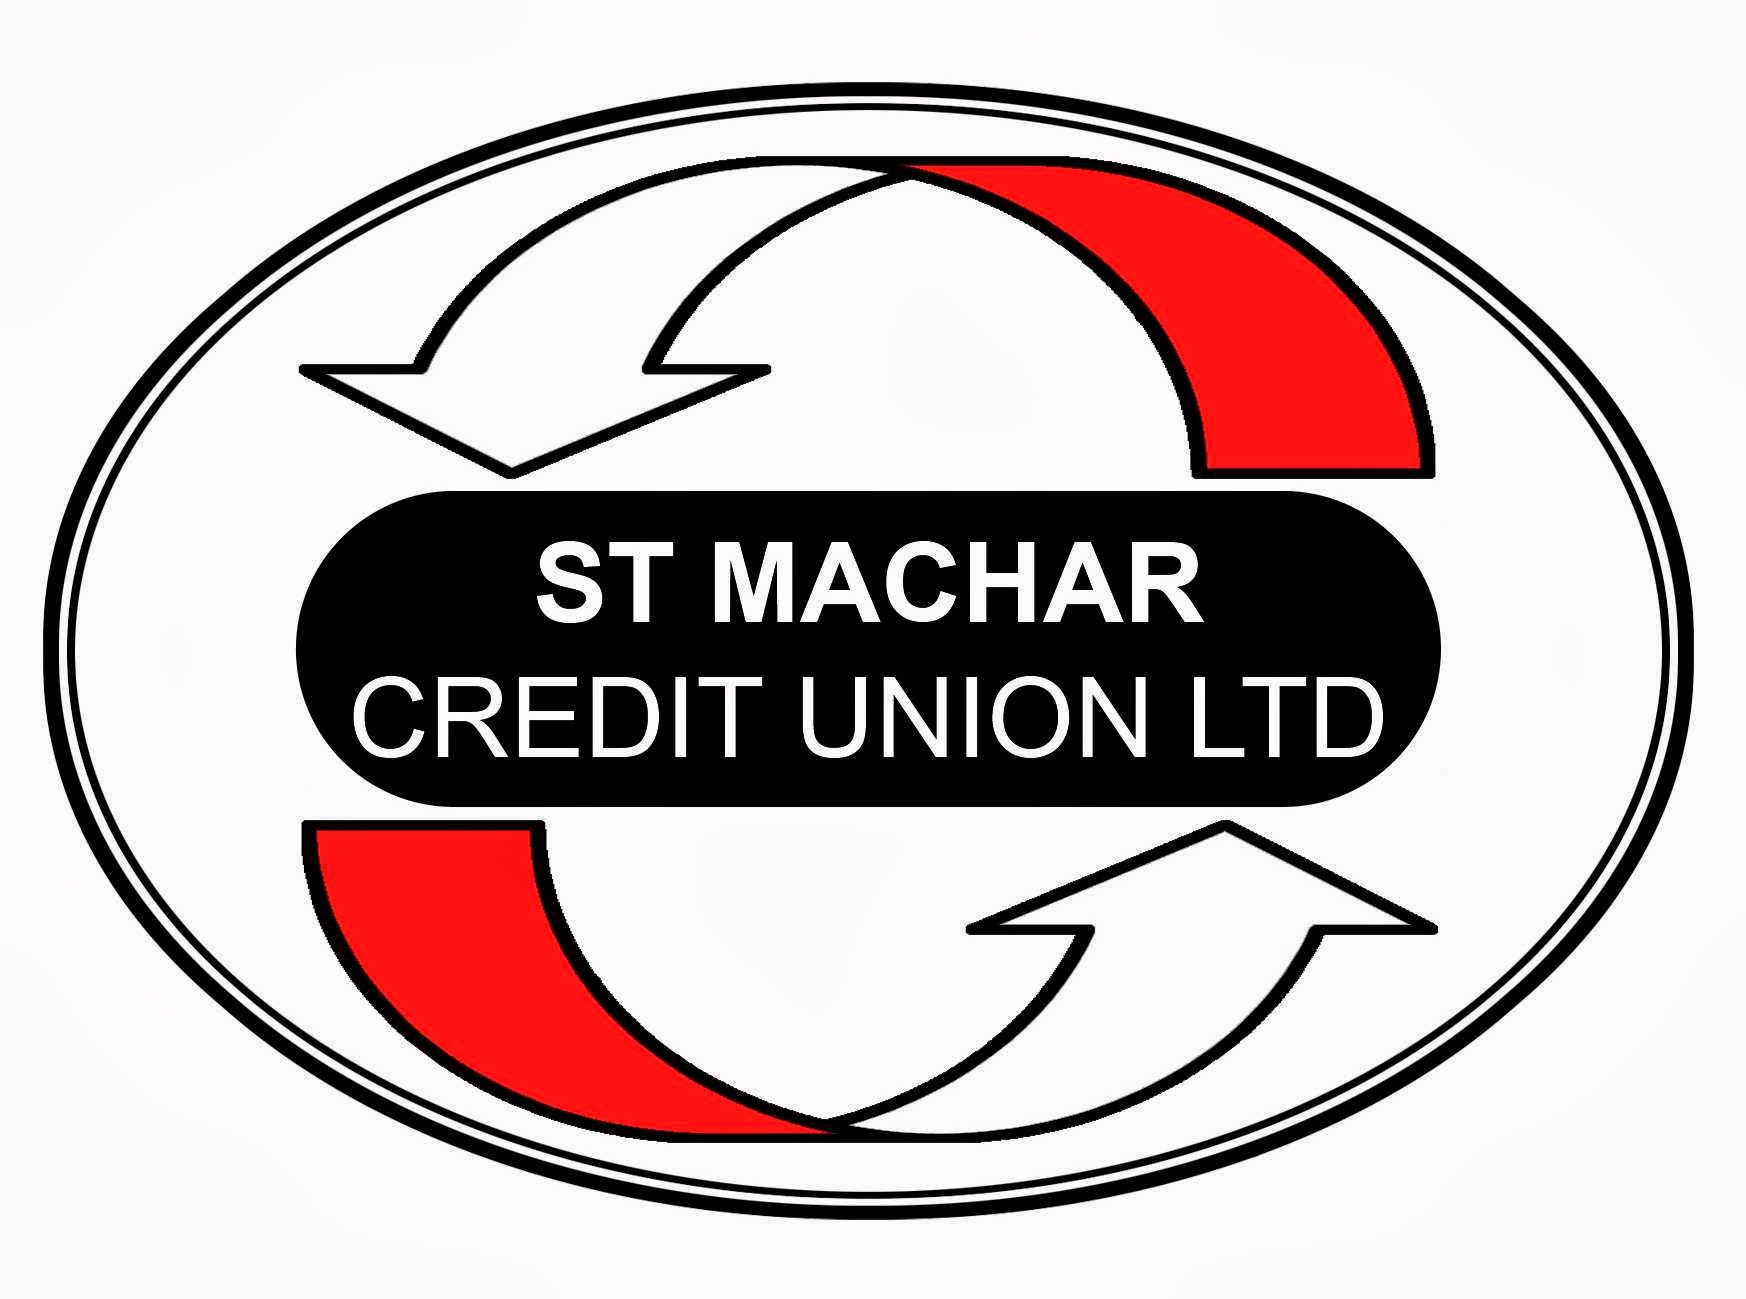 St Machar Credit Union Ltd 02